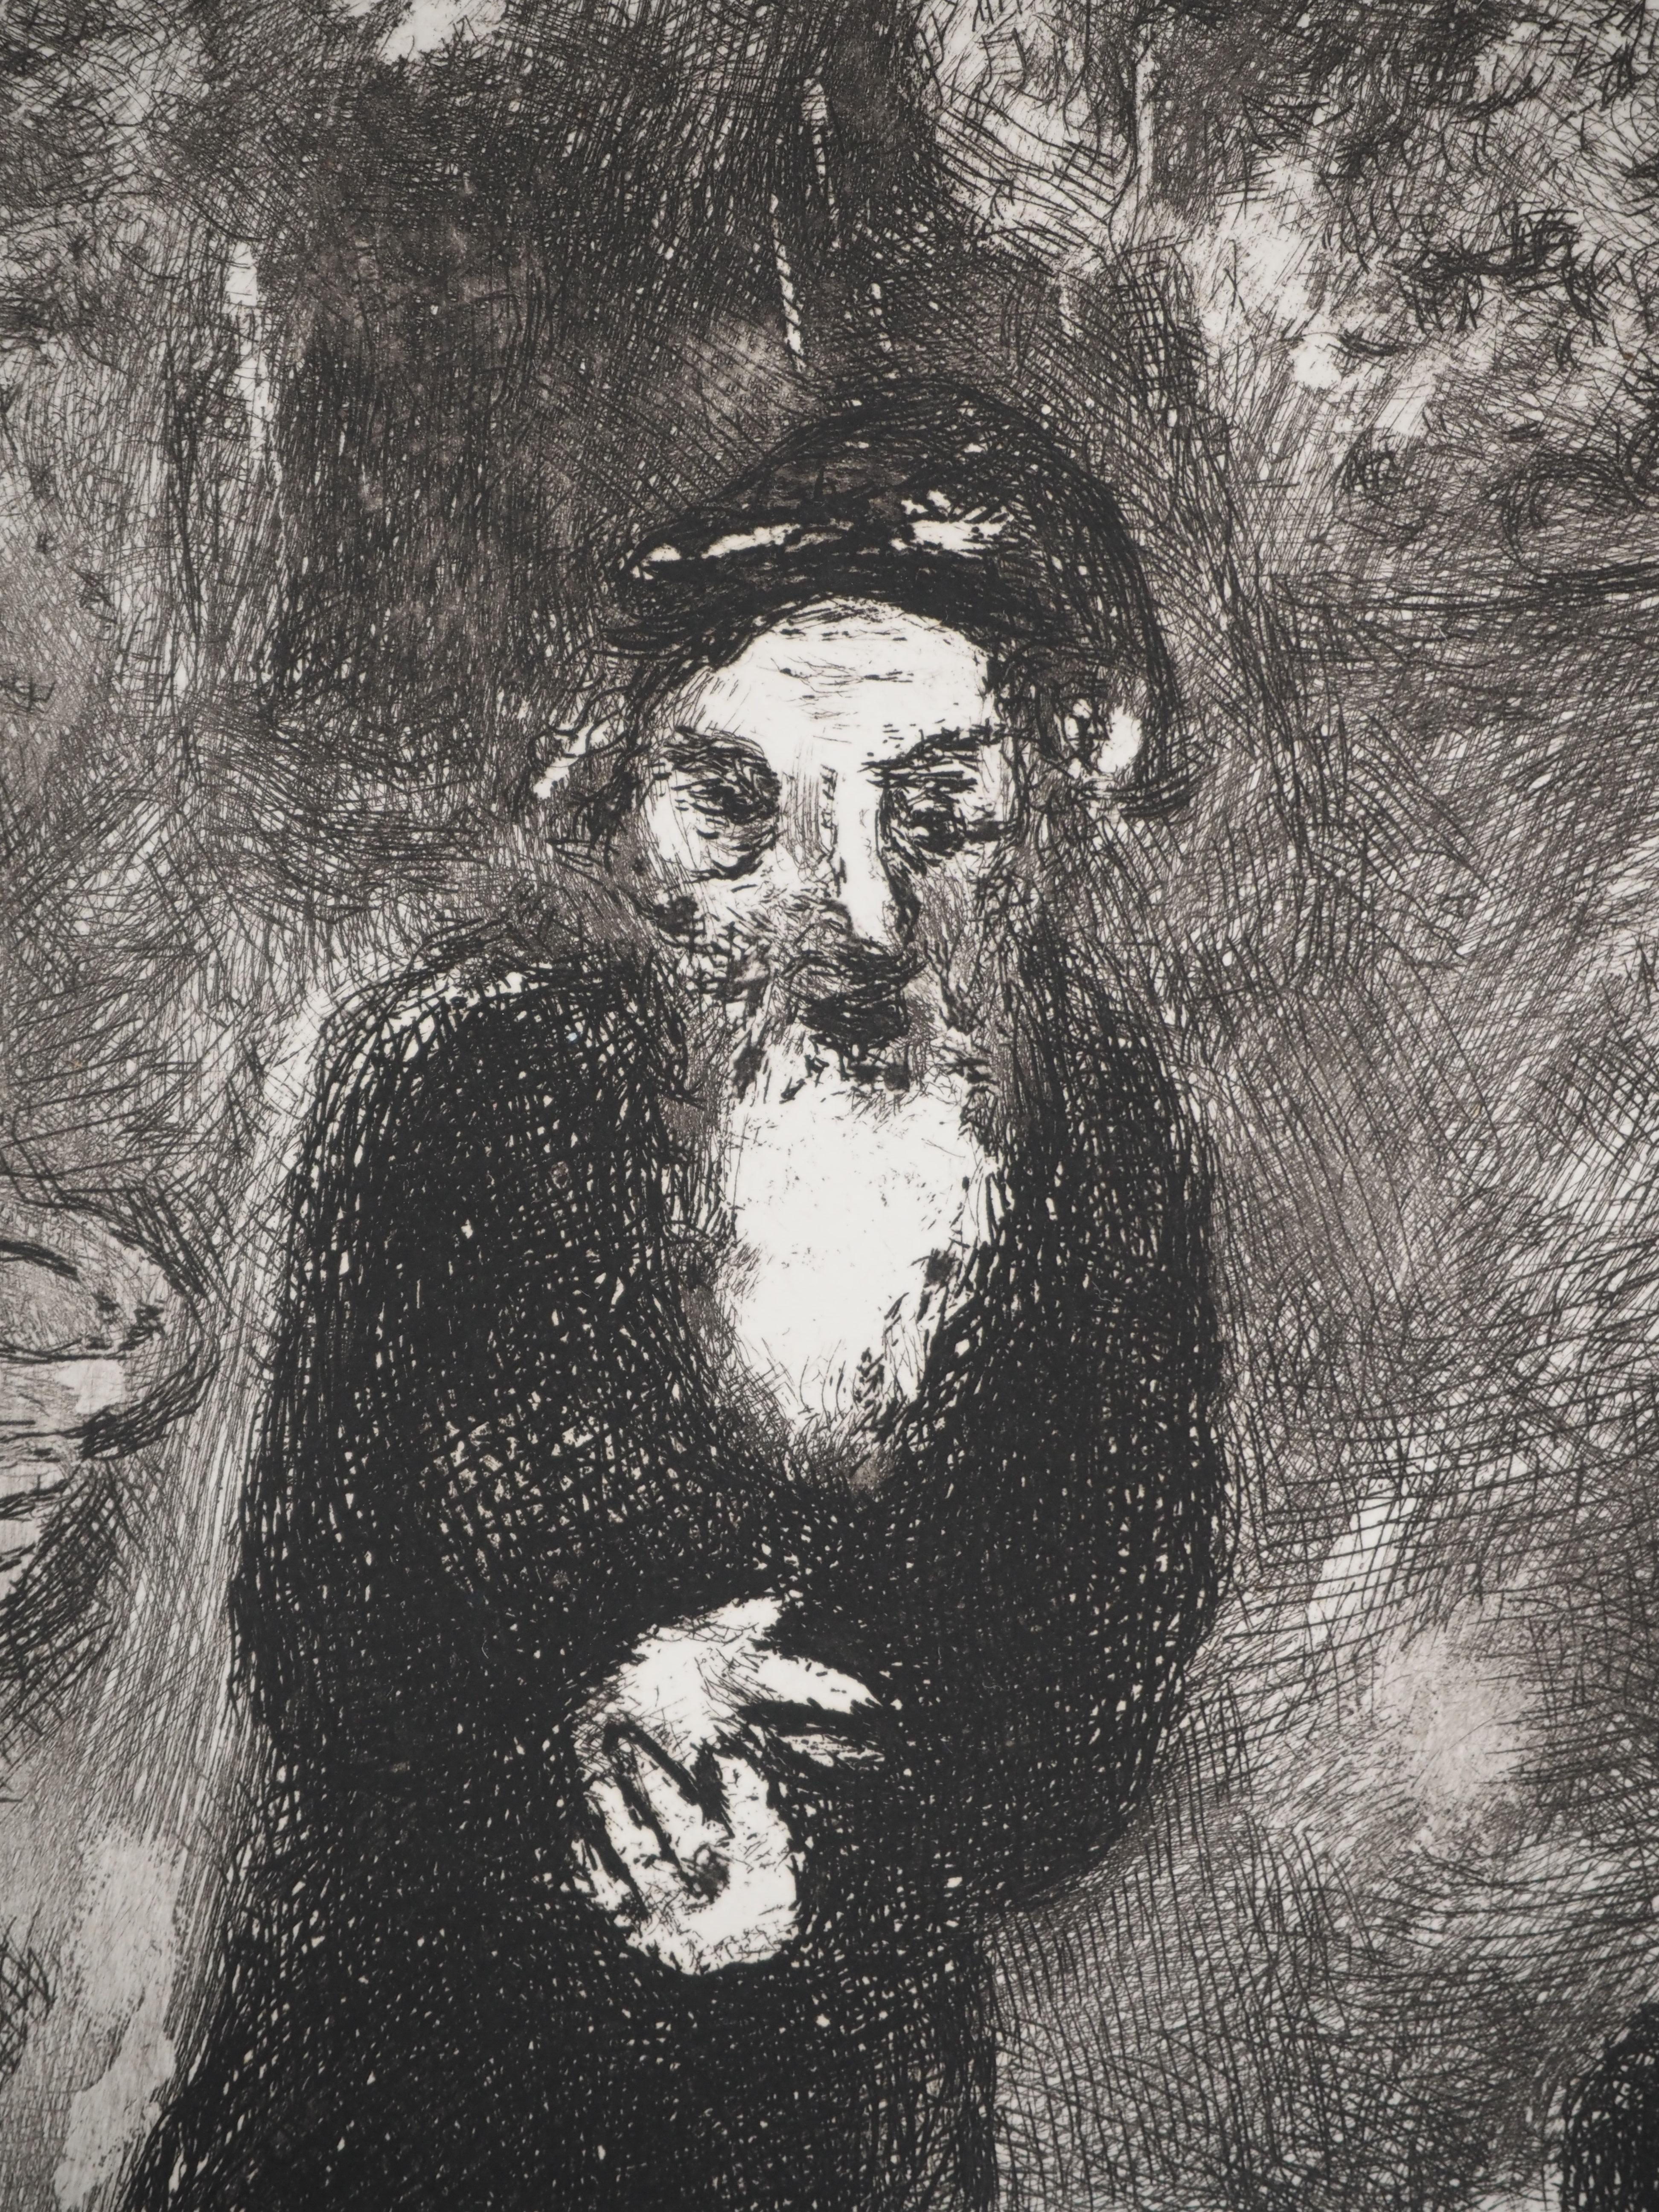 Marc Chagall (1887-1958)
Bible : Abraham et les trois anges, 1939

Gravure originale
Non signé
Sur vélin de Montval, 44 x 33.5 cm (c. 17.3 x 13.1 inch)

INFORMATION : Publié par Vollard / Tériade en 1956

RÉFÉRENCE : Catalogue raisonné Sorlier réf.